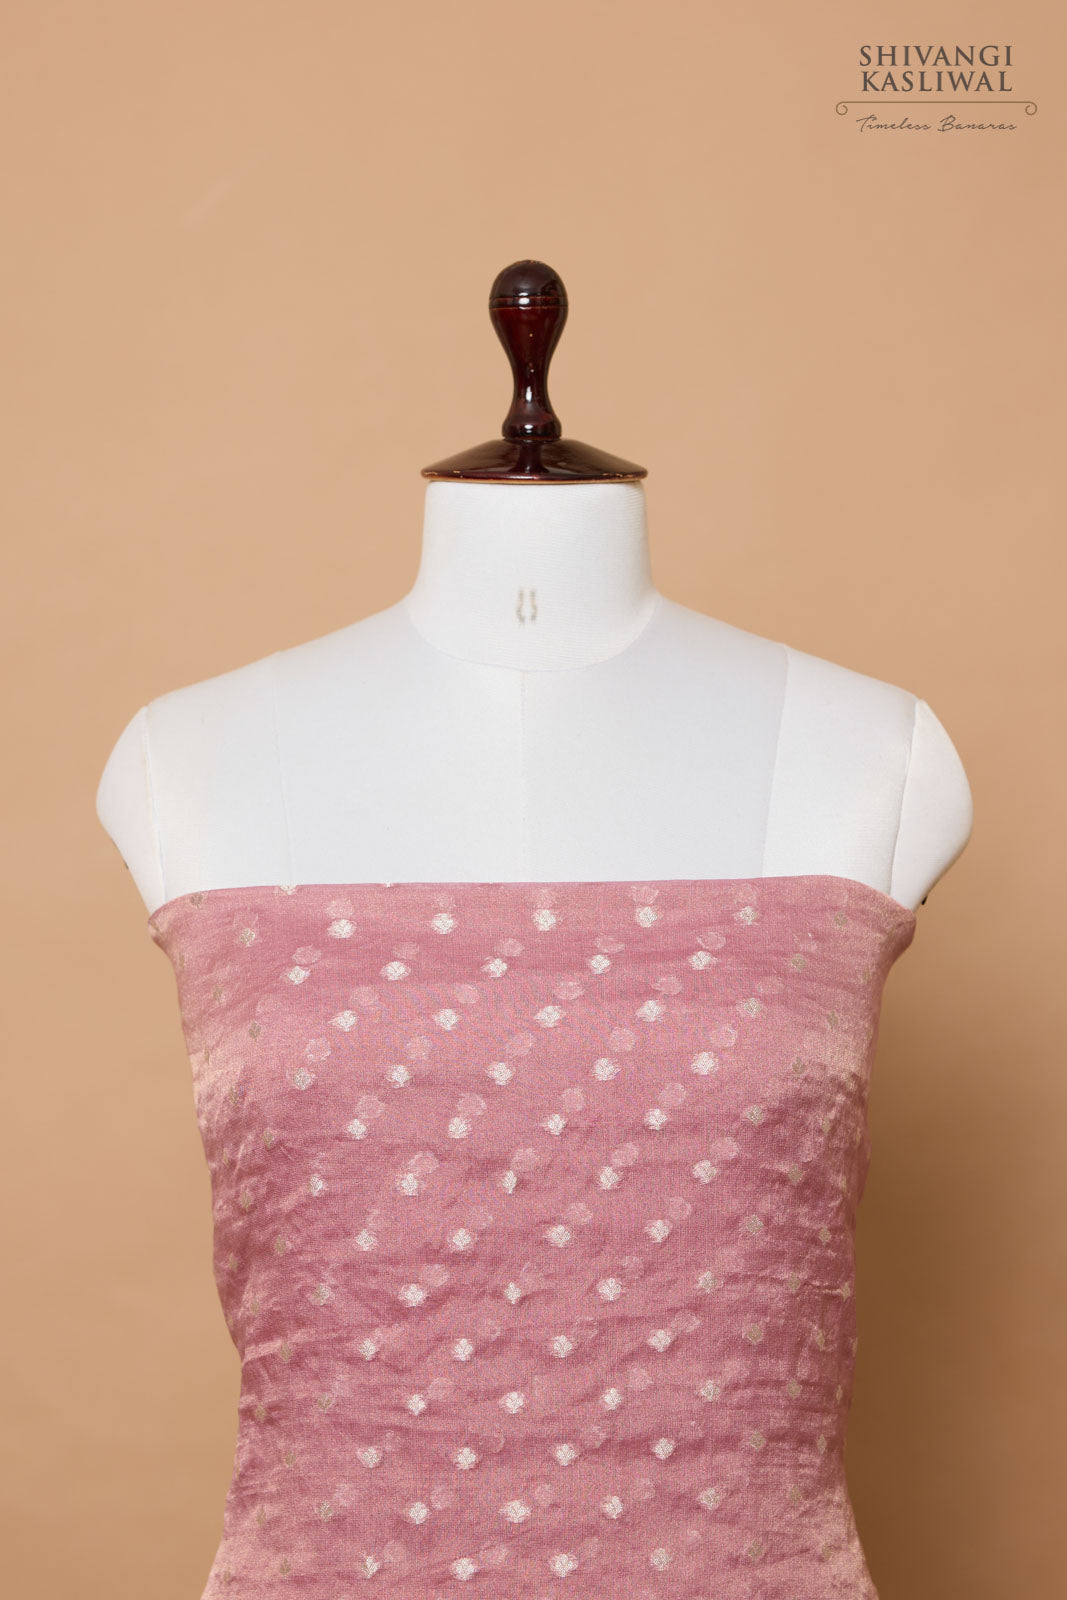 Onion Pink Handwoven Banarasi Georgette Tissue Suit Piece